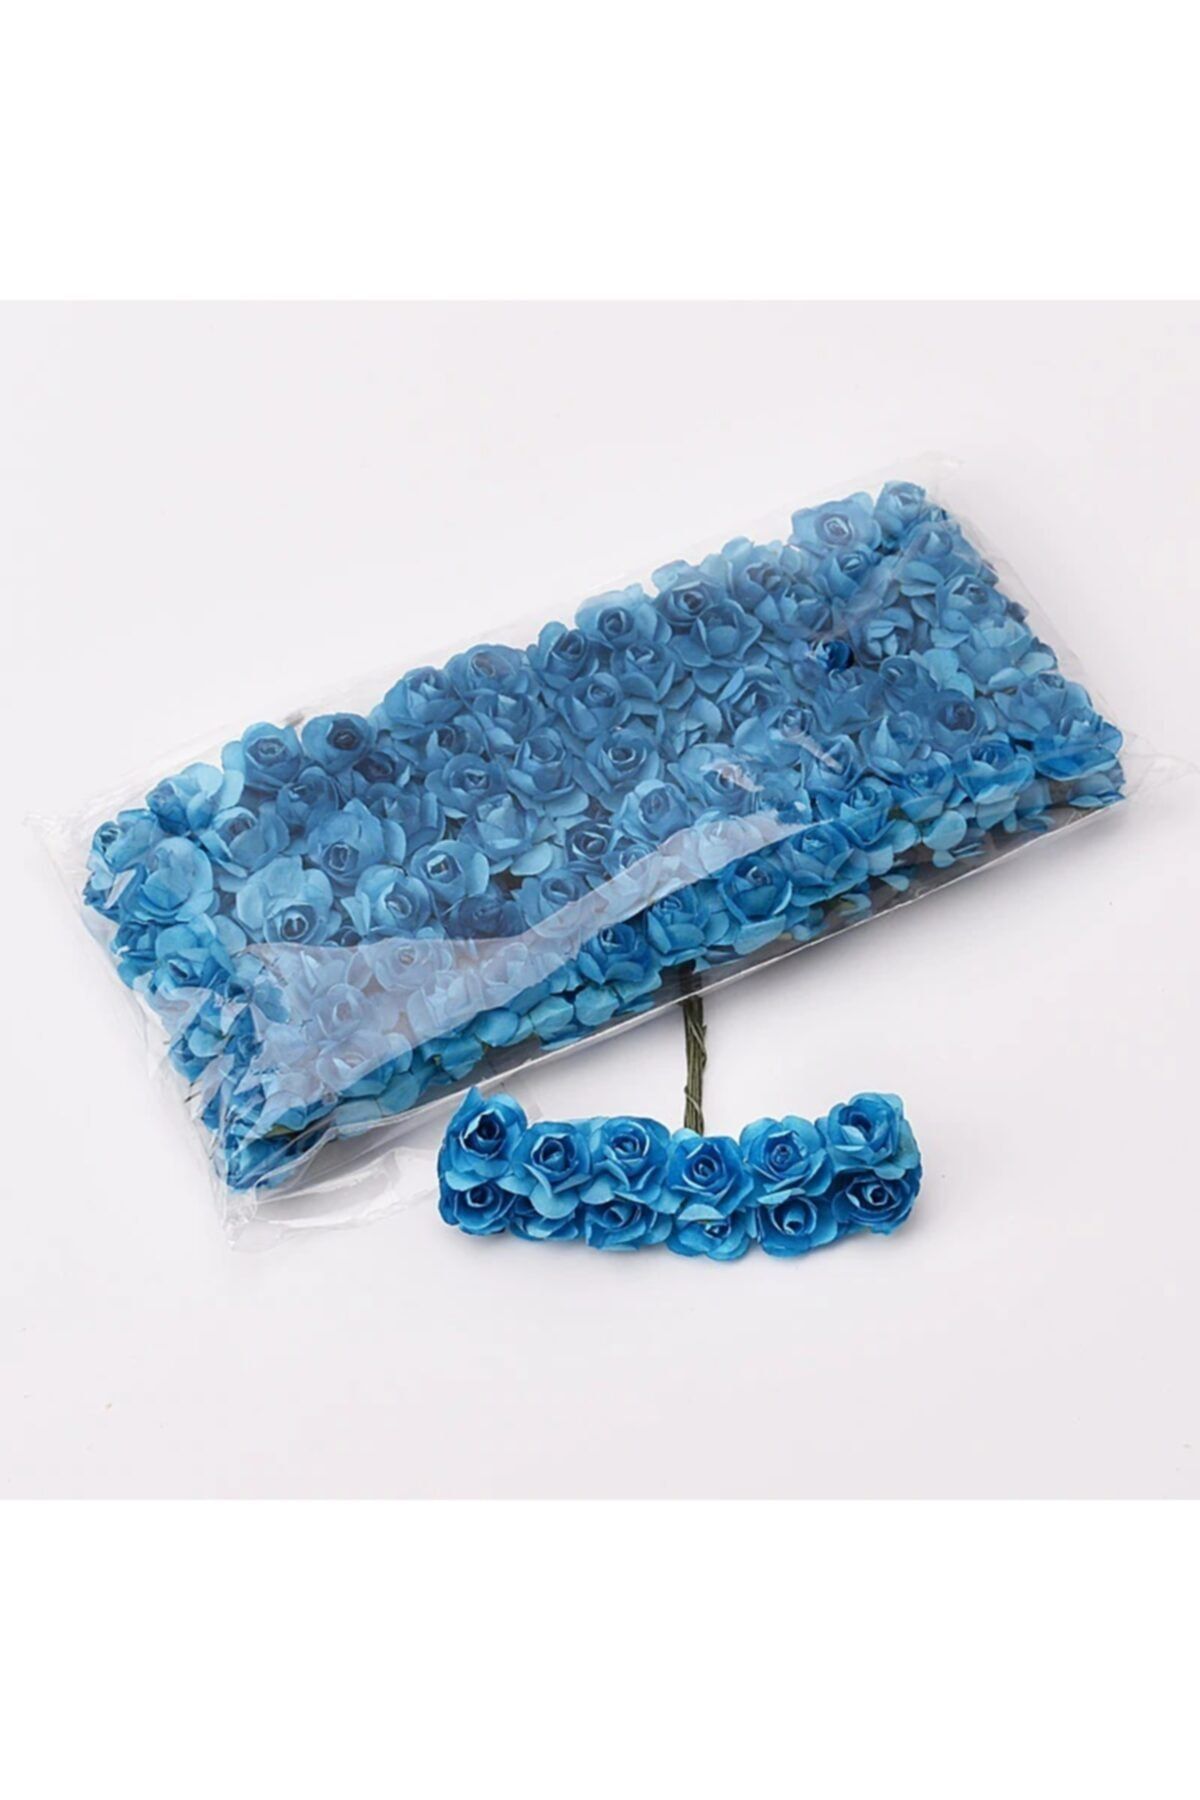 Aker Hediyelik Mavi Kağıt Gül 144lü Kağıt Güller El Işi Süsleme Hobi Dekorasyon Tasarım Yapay Çiçek Aranjman